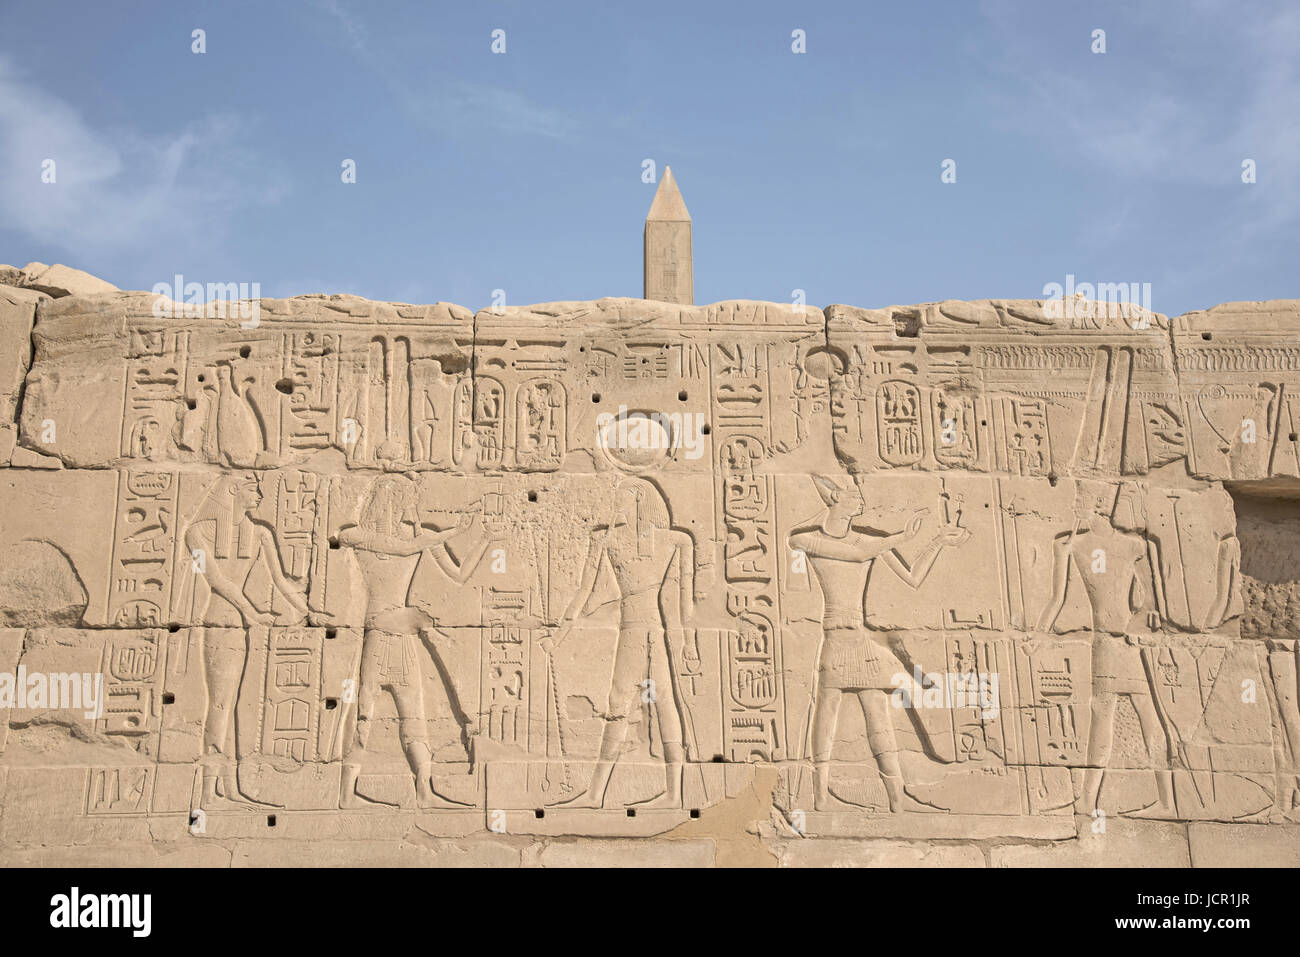 Detalles de talla, vista al interior del complejo del templo de Karnak, comprende una vasta variedad de dientes cariados templos, capillas, torres y otros edificios, Luxor, Egipto Foto de stock